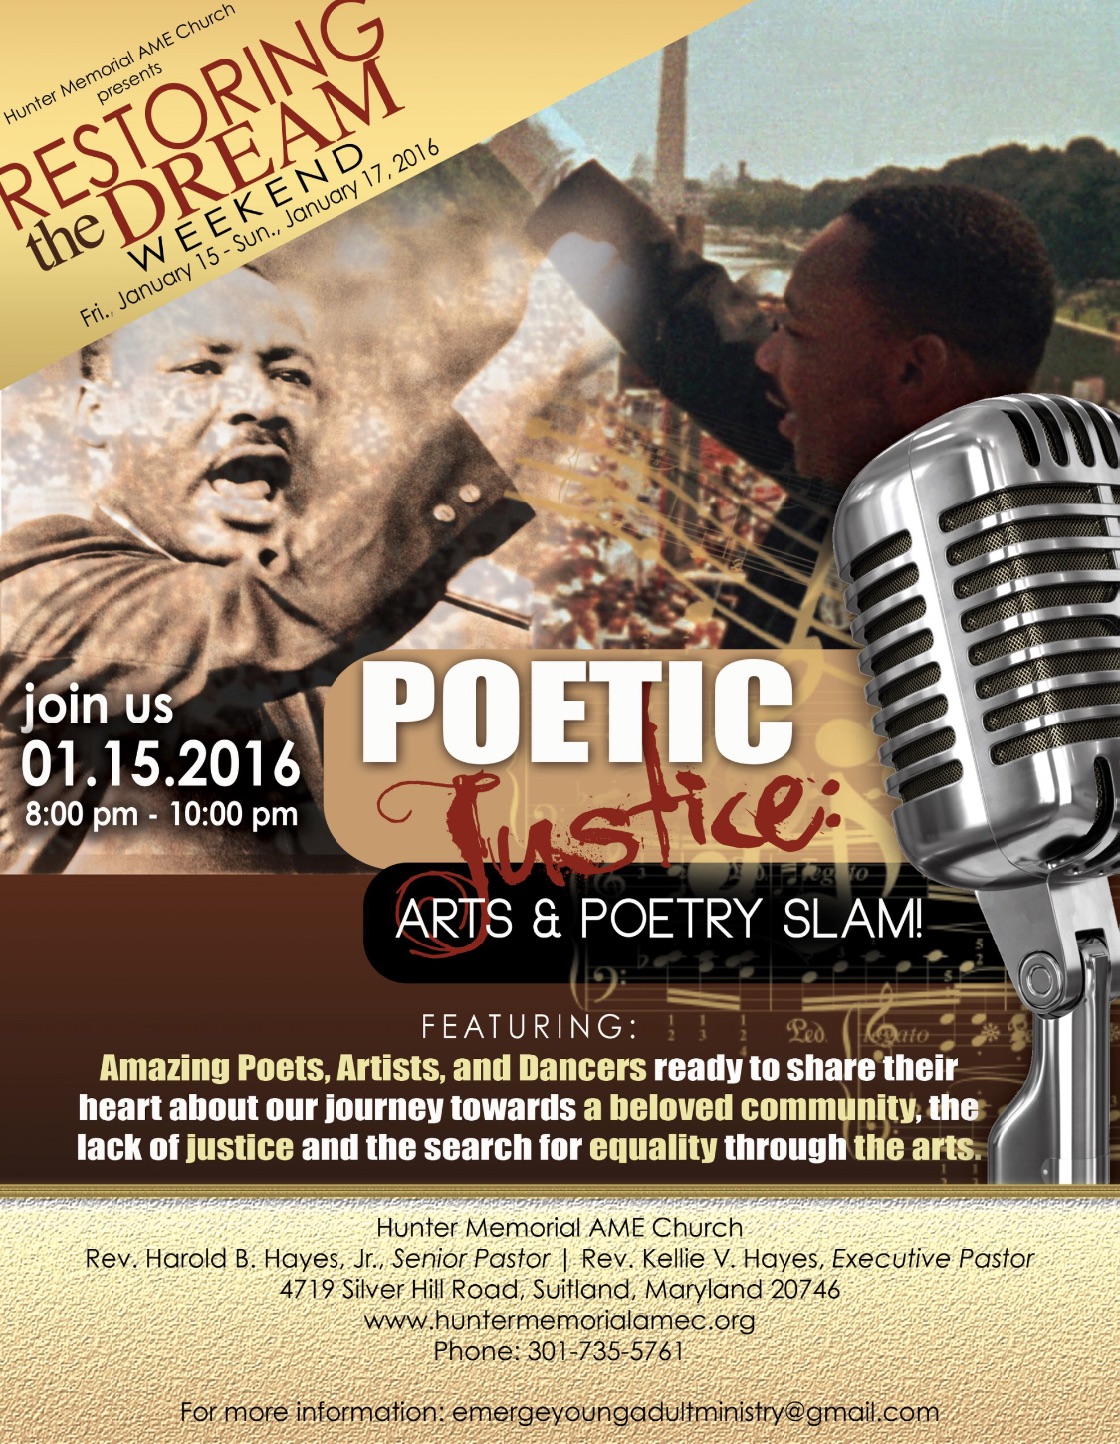 M.L.K. Poetic Justice Arts & Poetry Slam